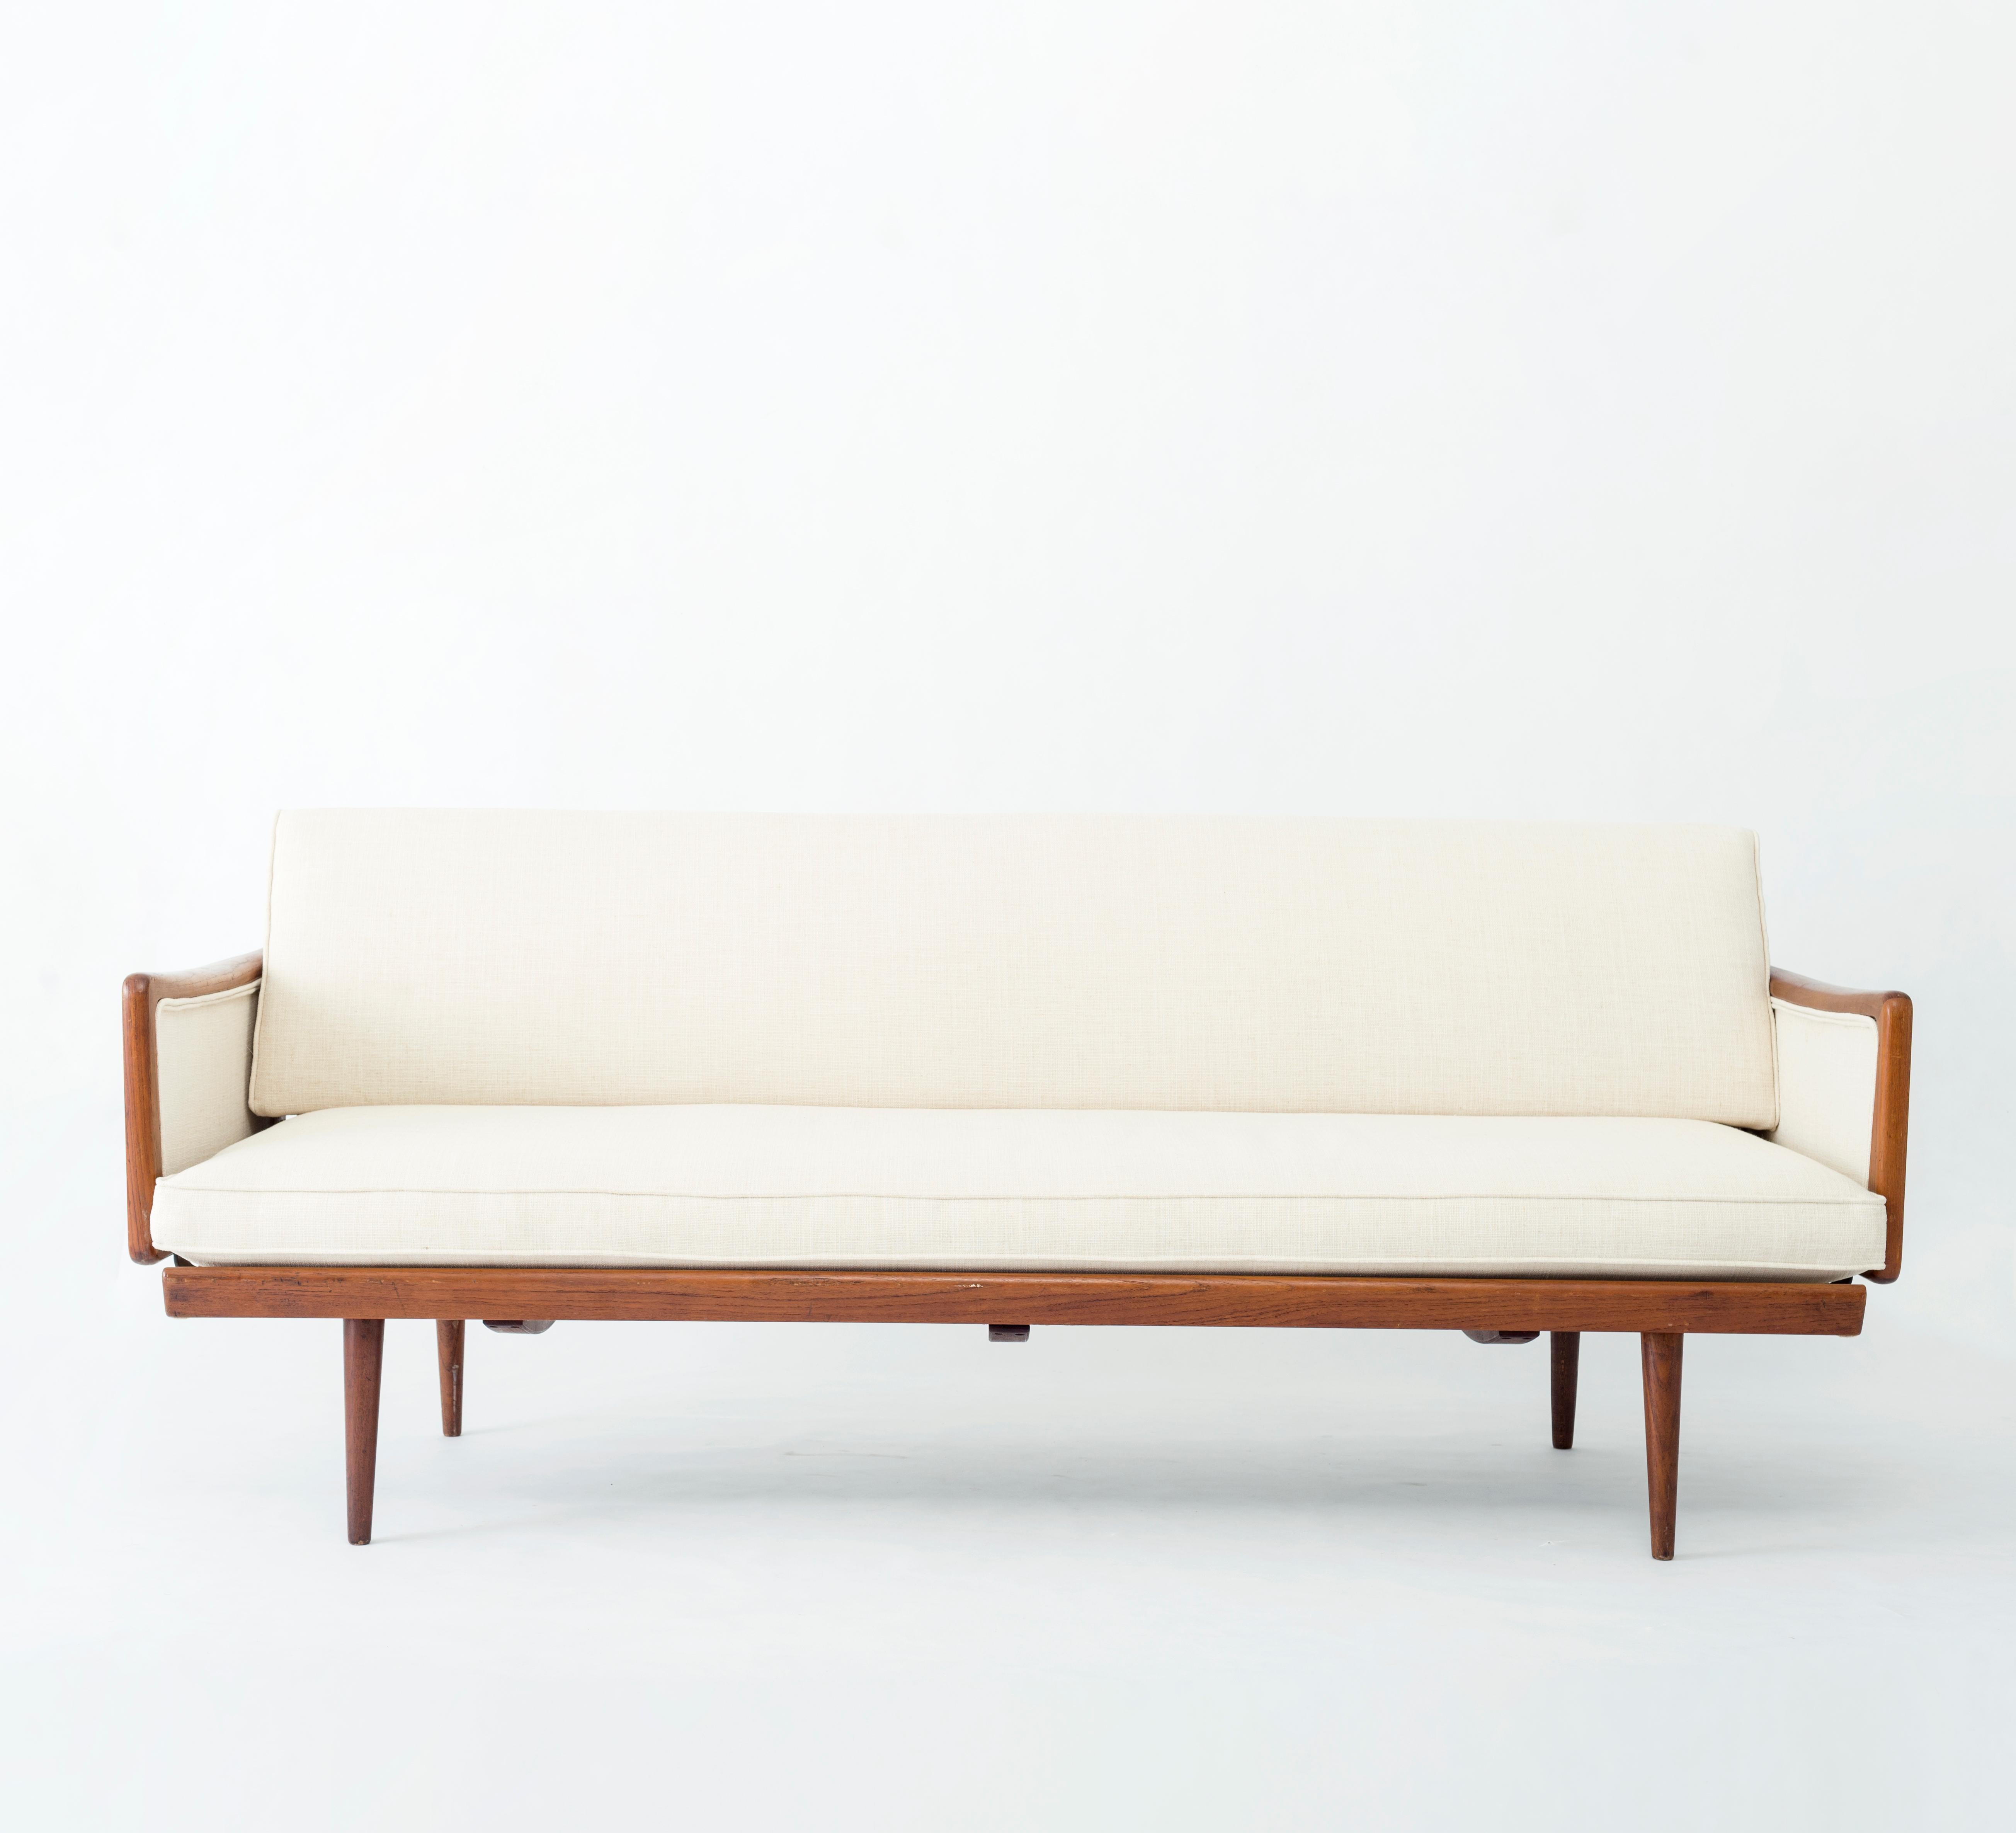 Model FD 451 sofa by Danish designers Peter Hvidt & Orla Molgaard Nielsen for France & Daverkosen, 1950s
Made in teak with cane sides.